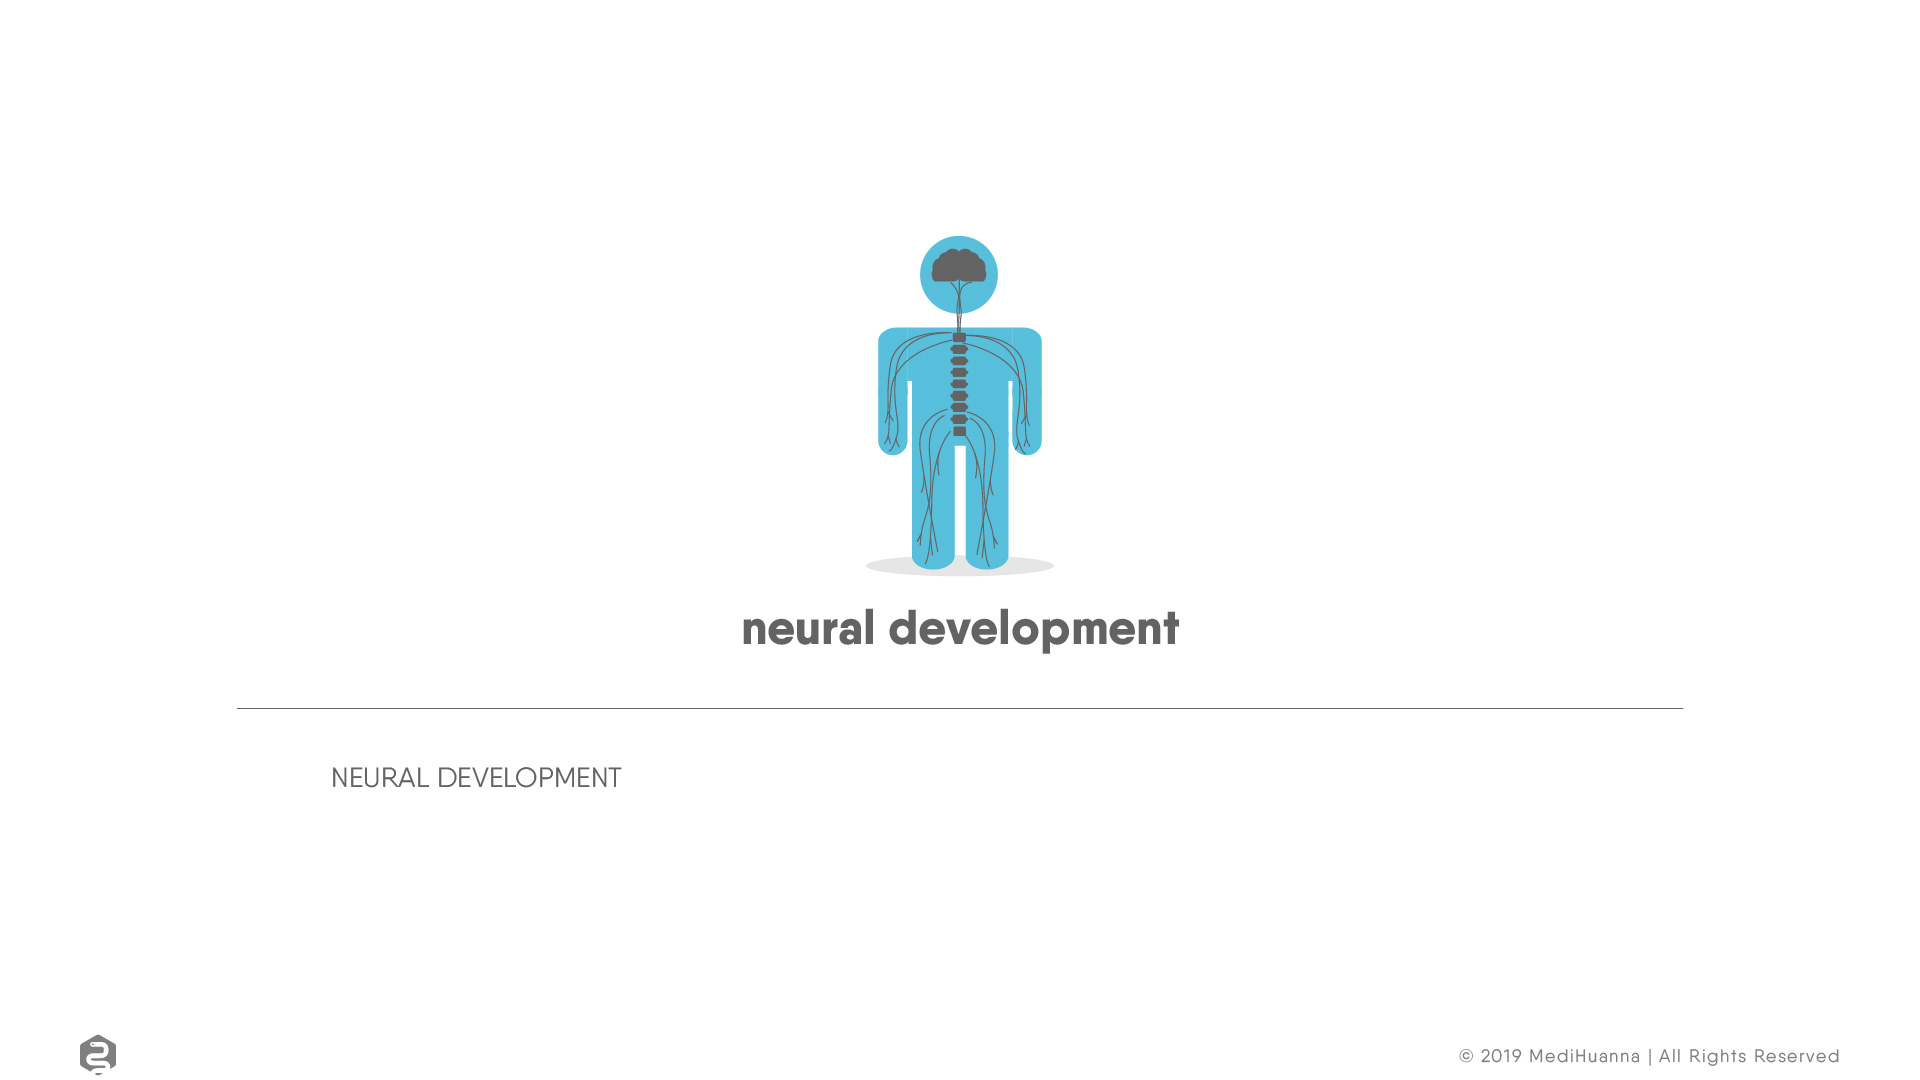 Neural development